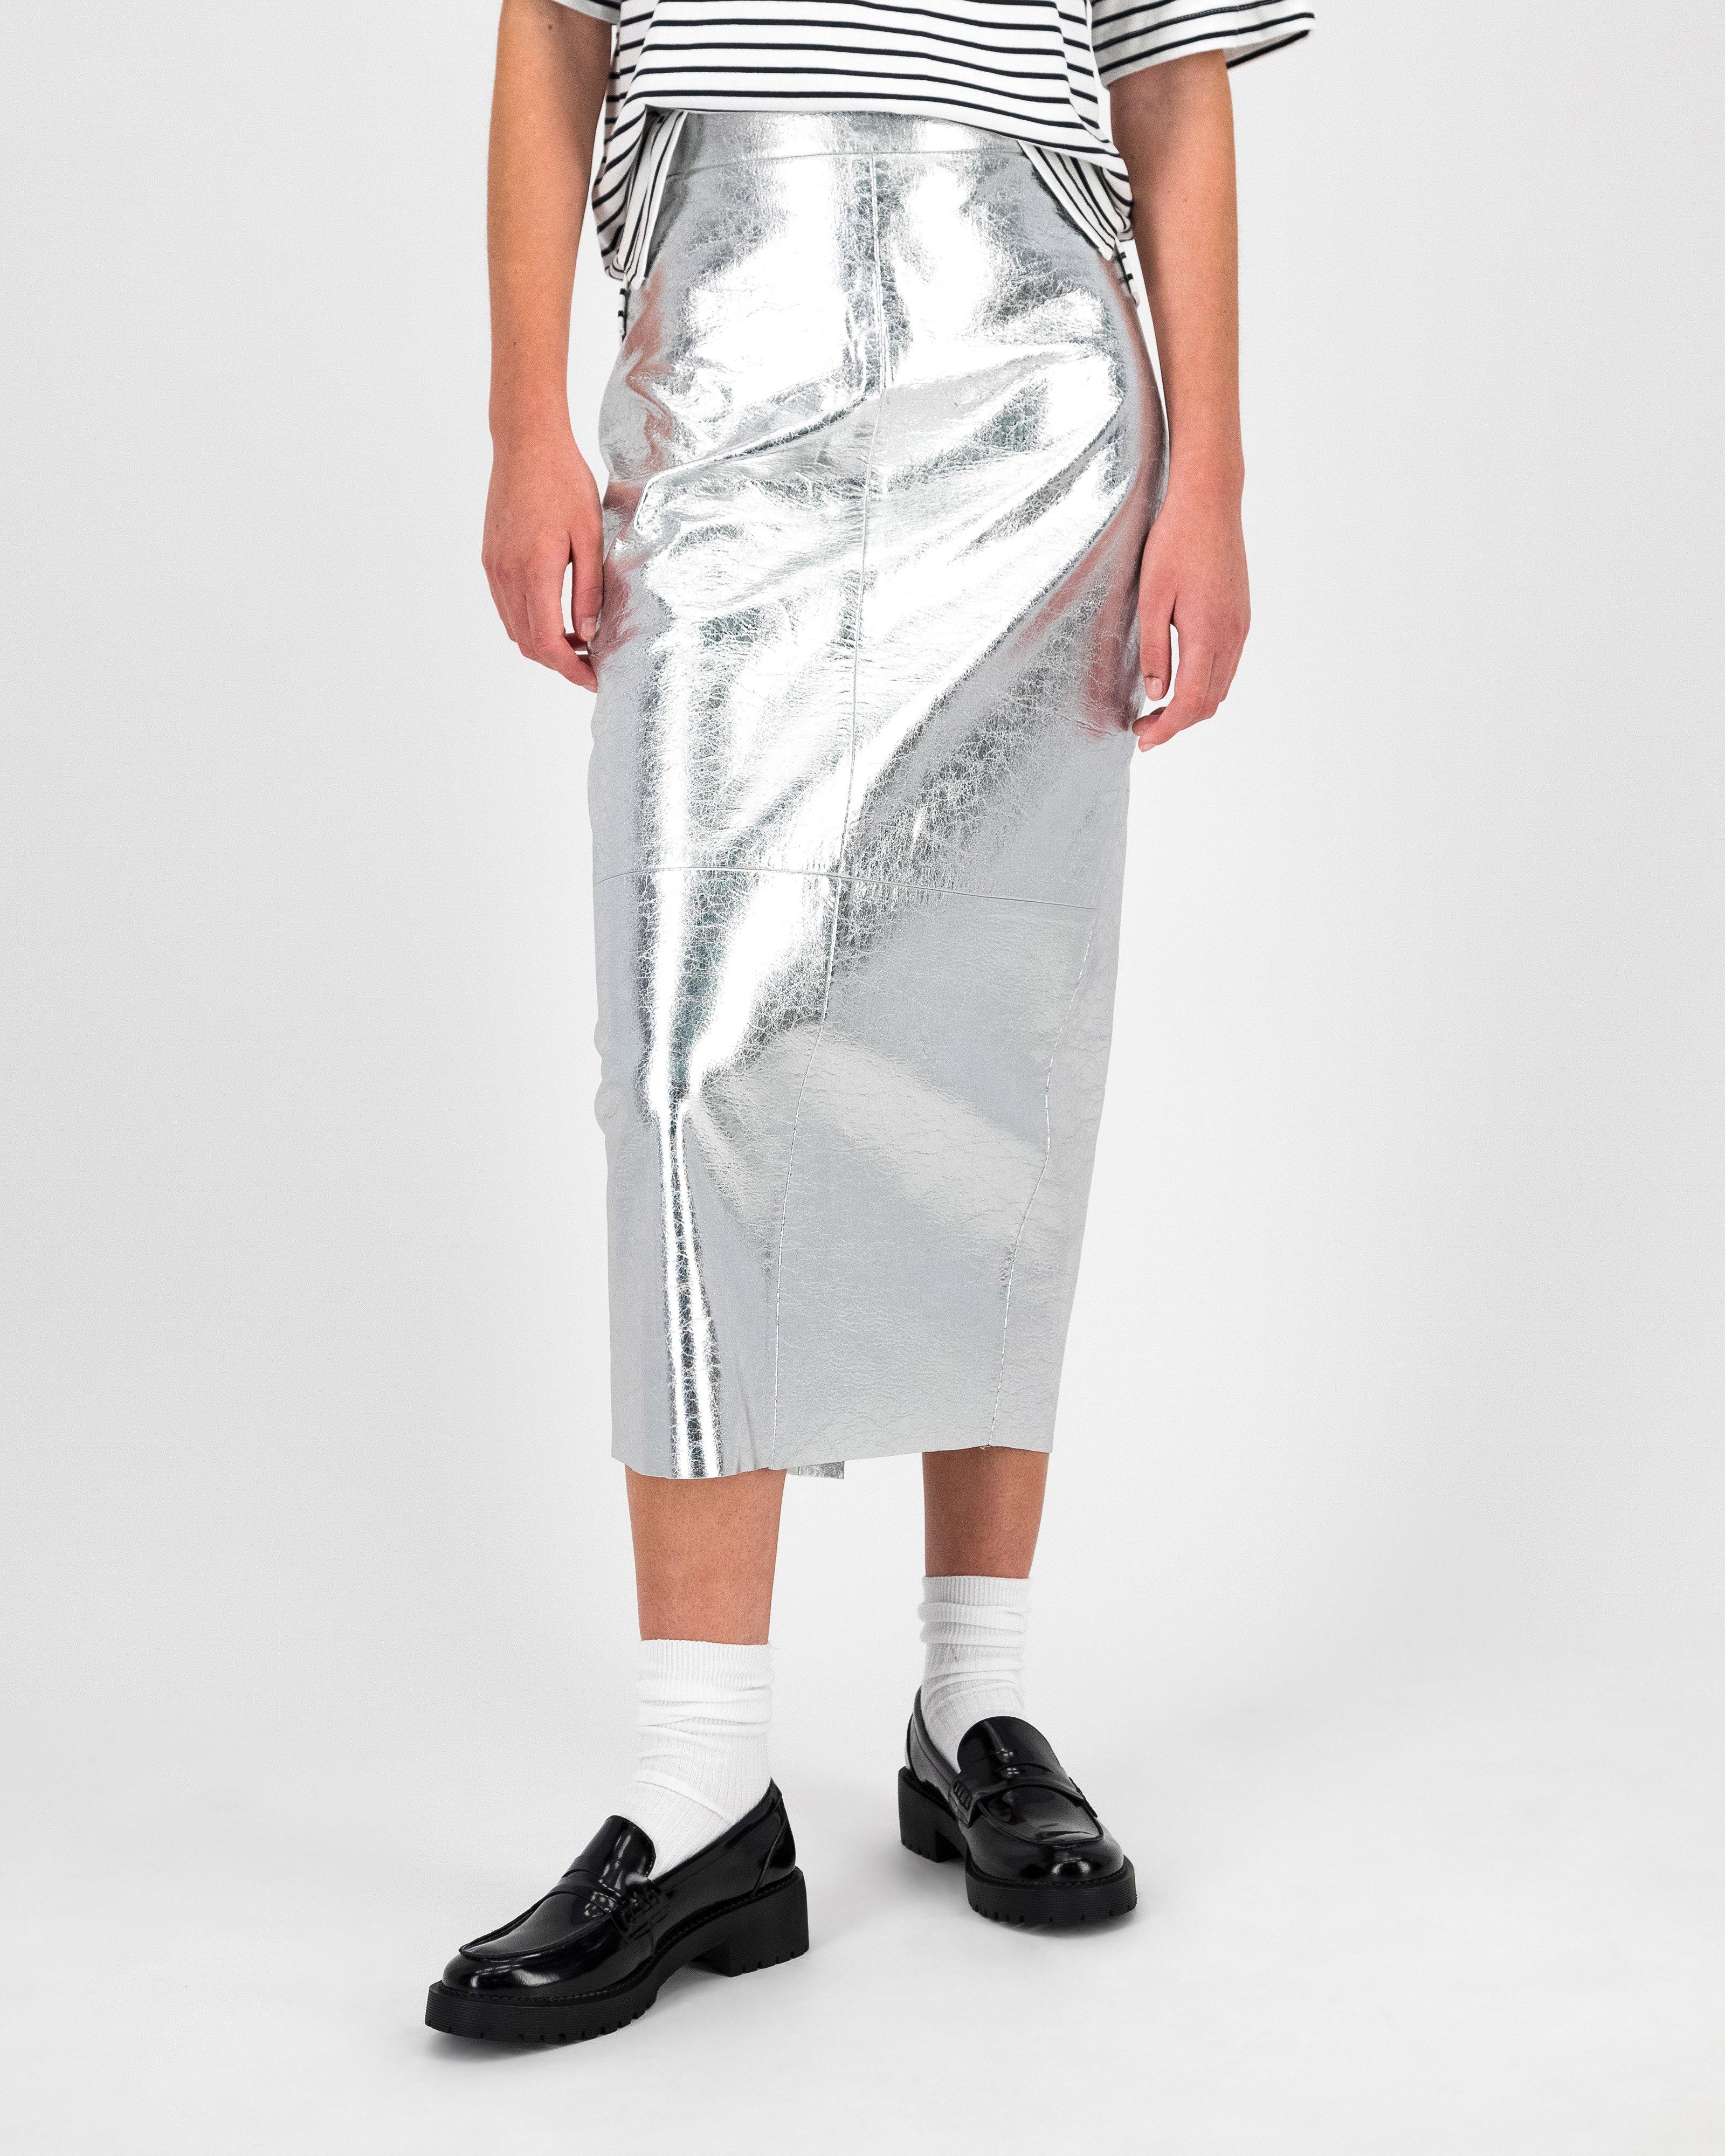 Autumn Metallic Skirt -  Silver